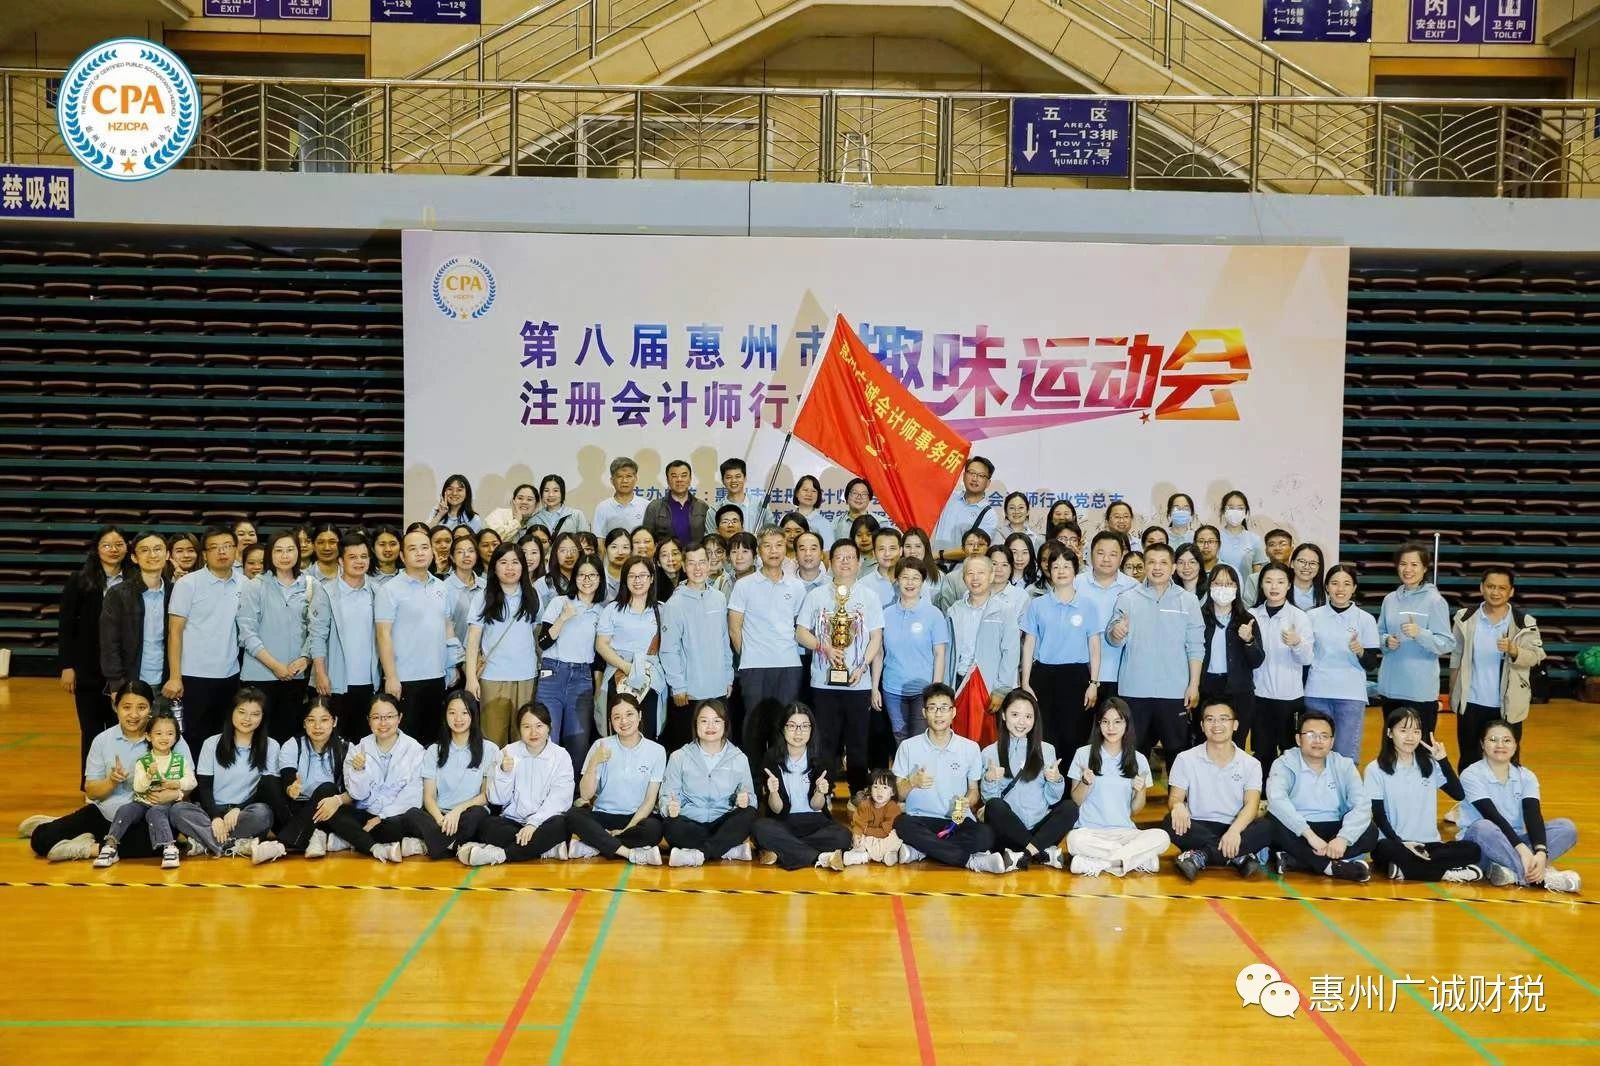 恭喜！我所荣获惠州市注册会计师行业第八届运动会比赛团体冠军